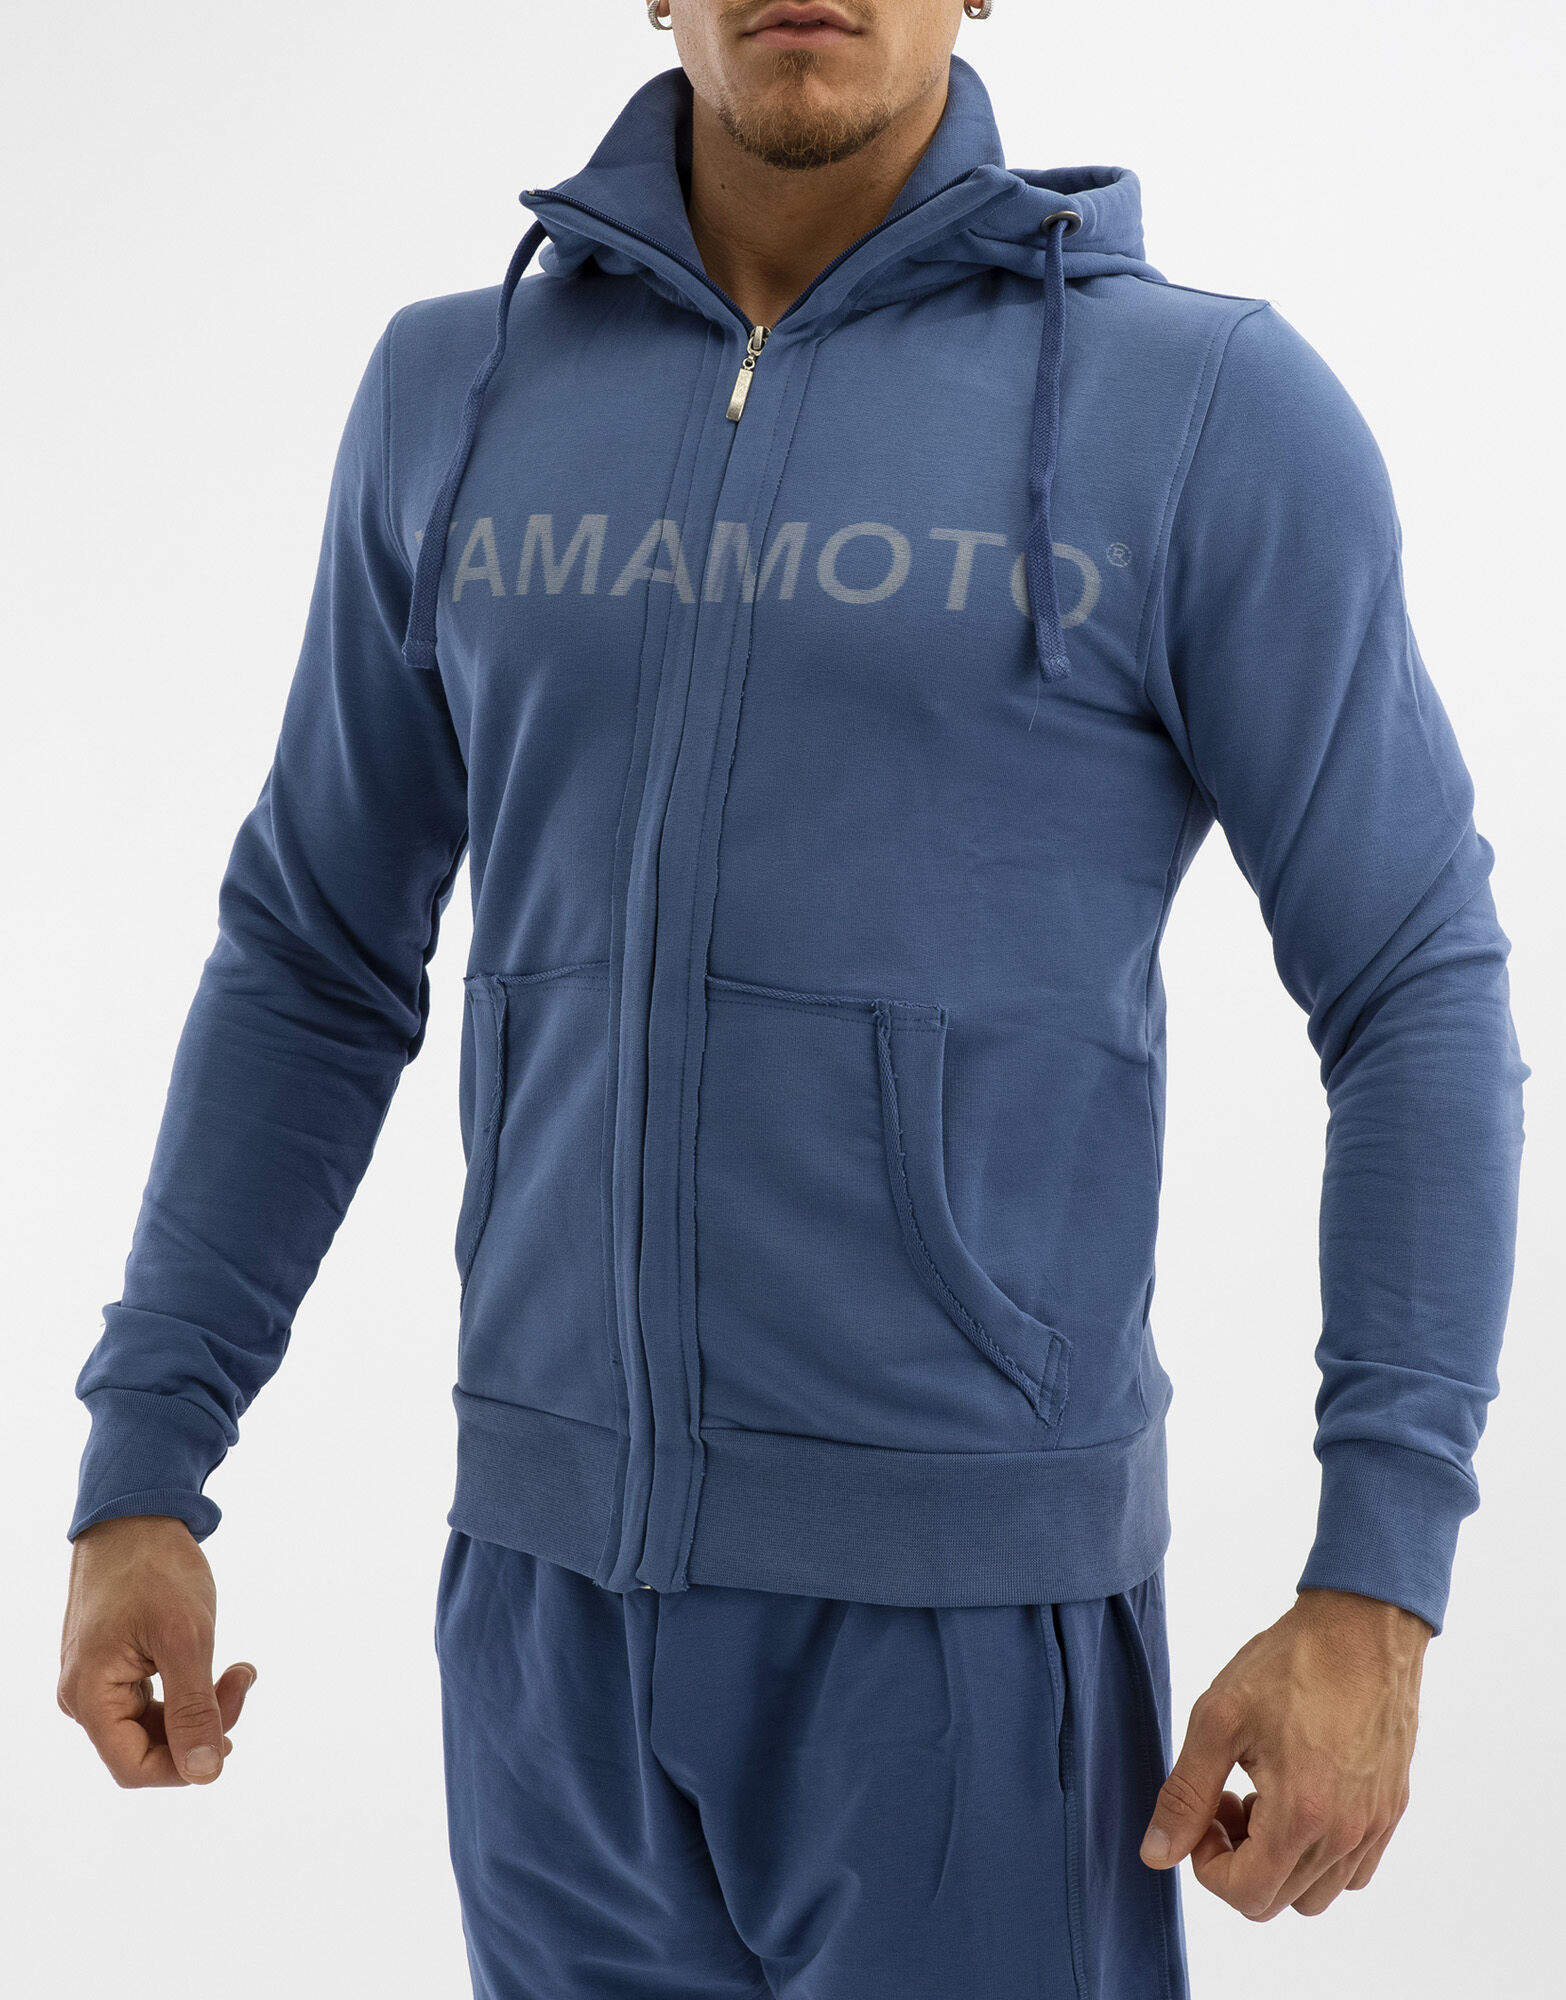 YAMAMOTO OUTFIT Sweatshirt Zip Colore: Navy Xxxl